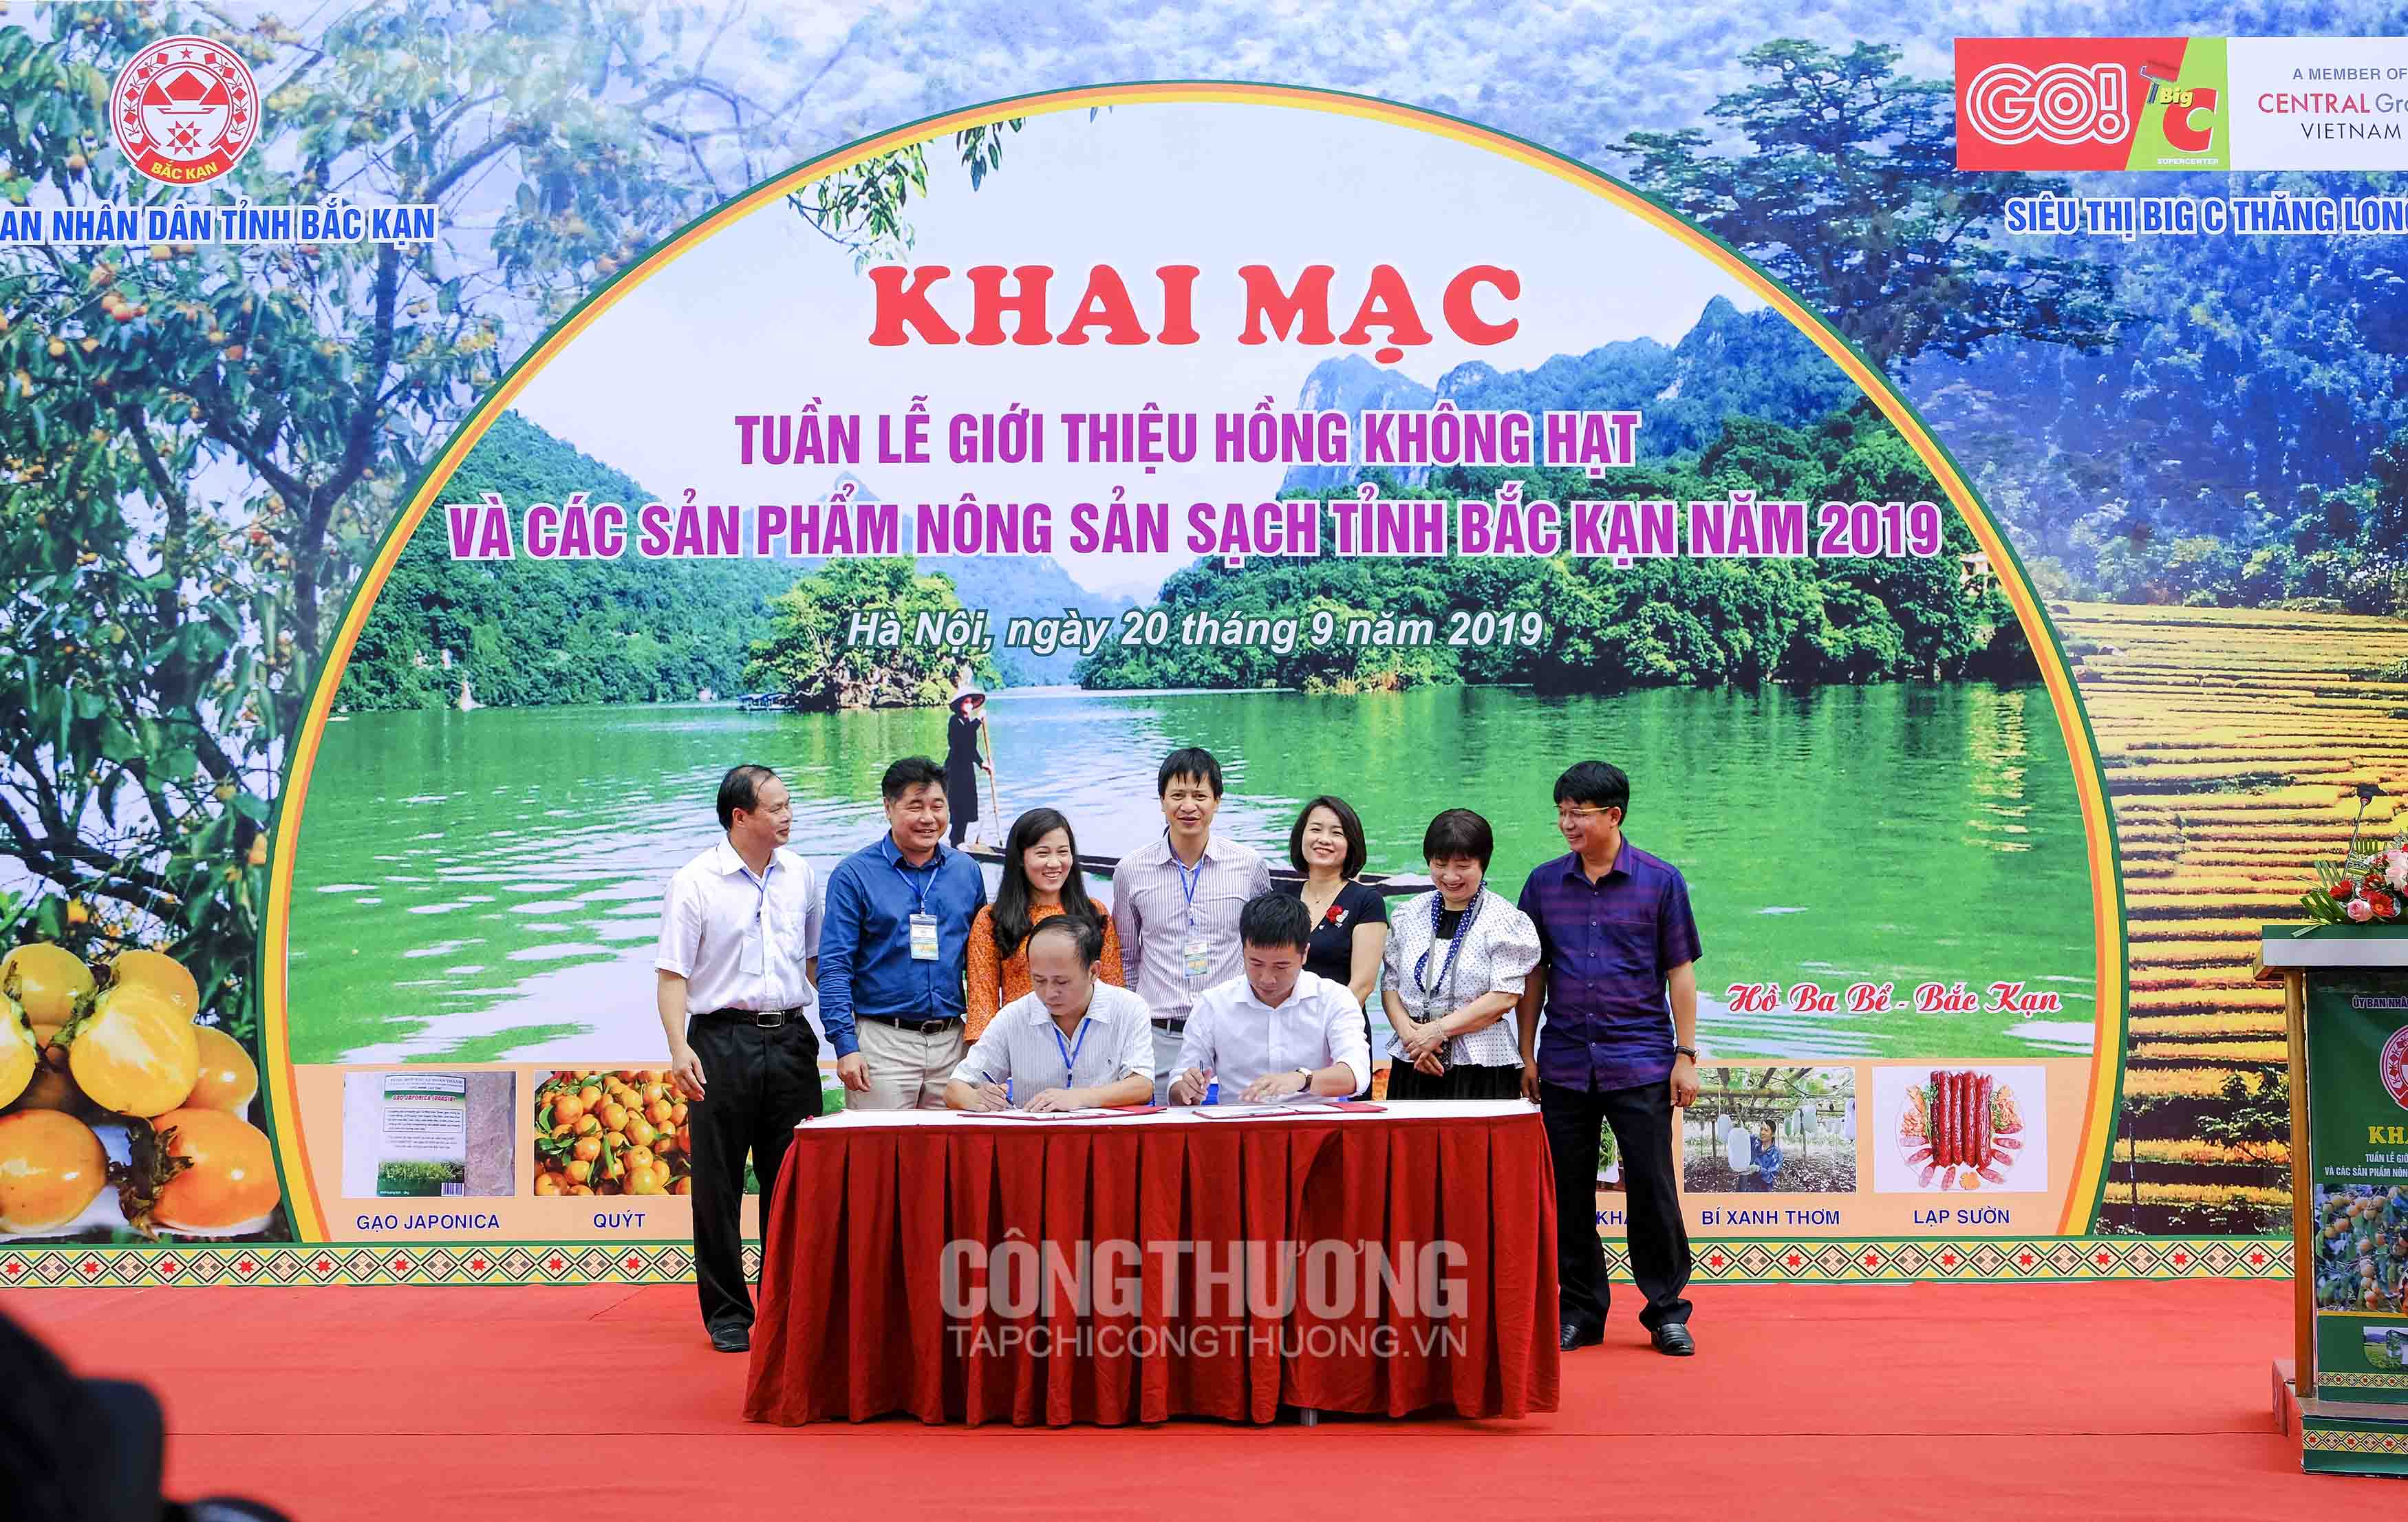 Lễ ký kết Biên bản ghi nhớ hợp tác (MOU) giữa Central Group Việt Nam và Trung tâm khuyến nông tỉnh Bắc Kạn để cùng nhau phối hợp triển khai Dự án Sinh kế cộng đồng trên địa bàn tỉnh Bắc Kạn